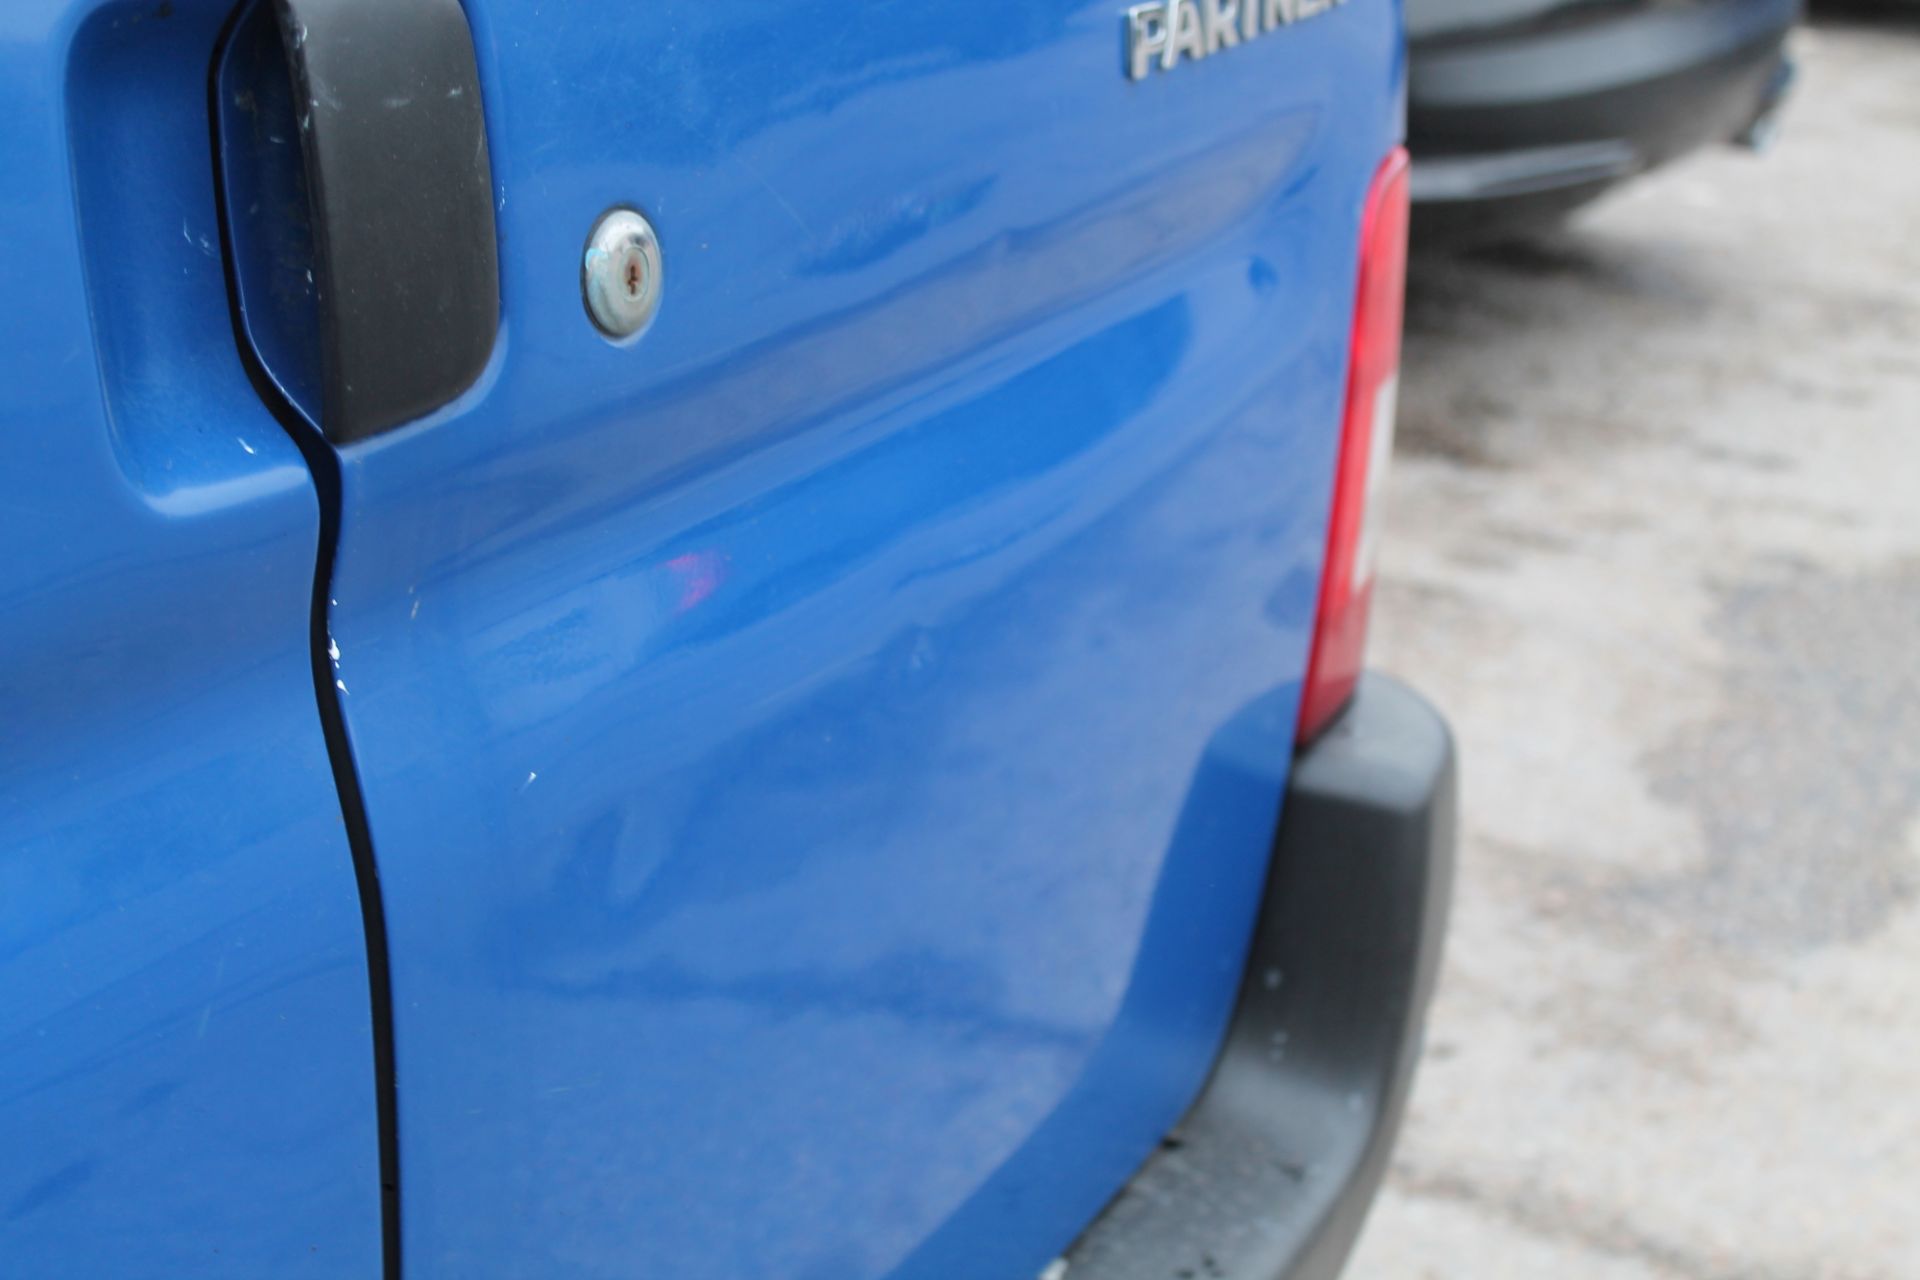 Peugeot Partner Lx600 66kw - 1560cc 2 Door Van - Image 8 of 8